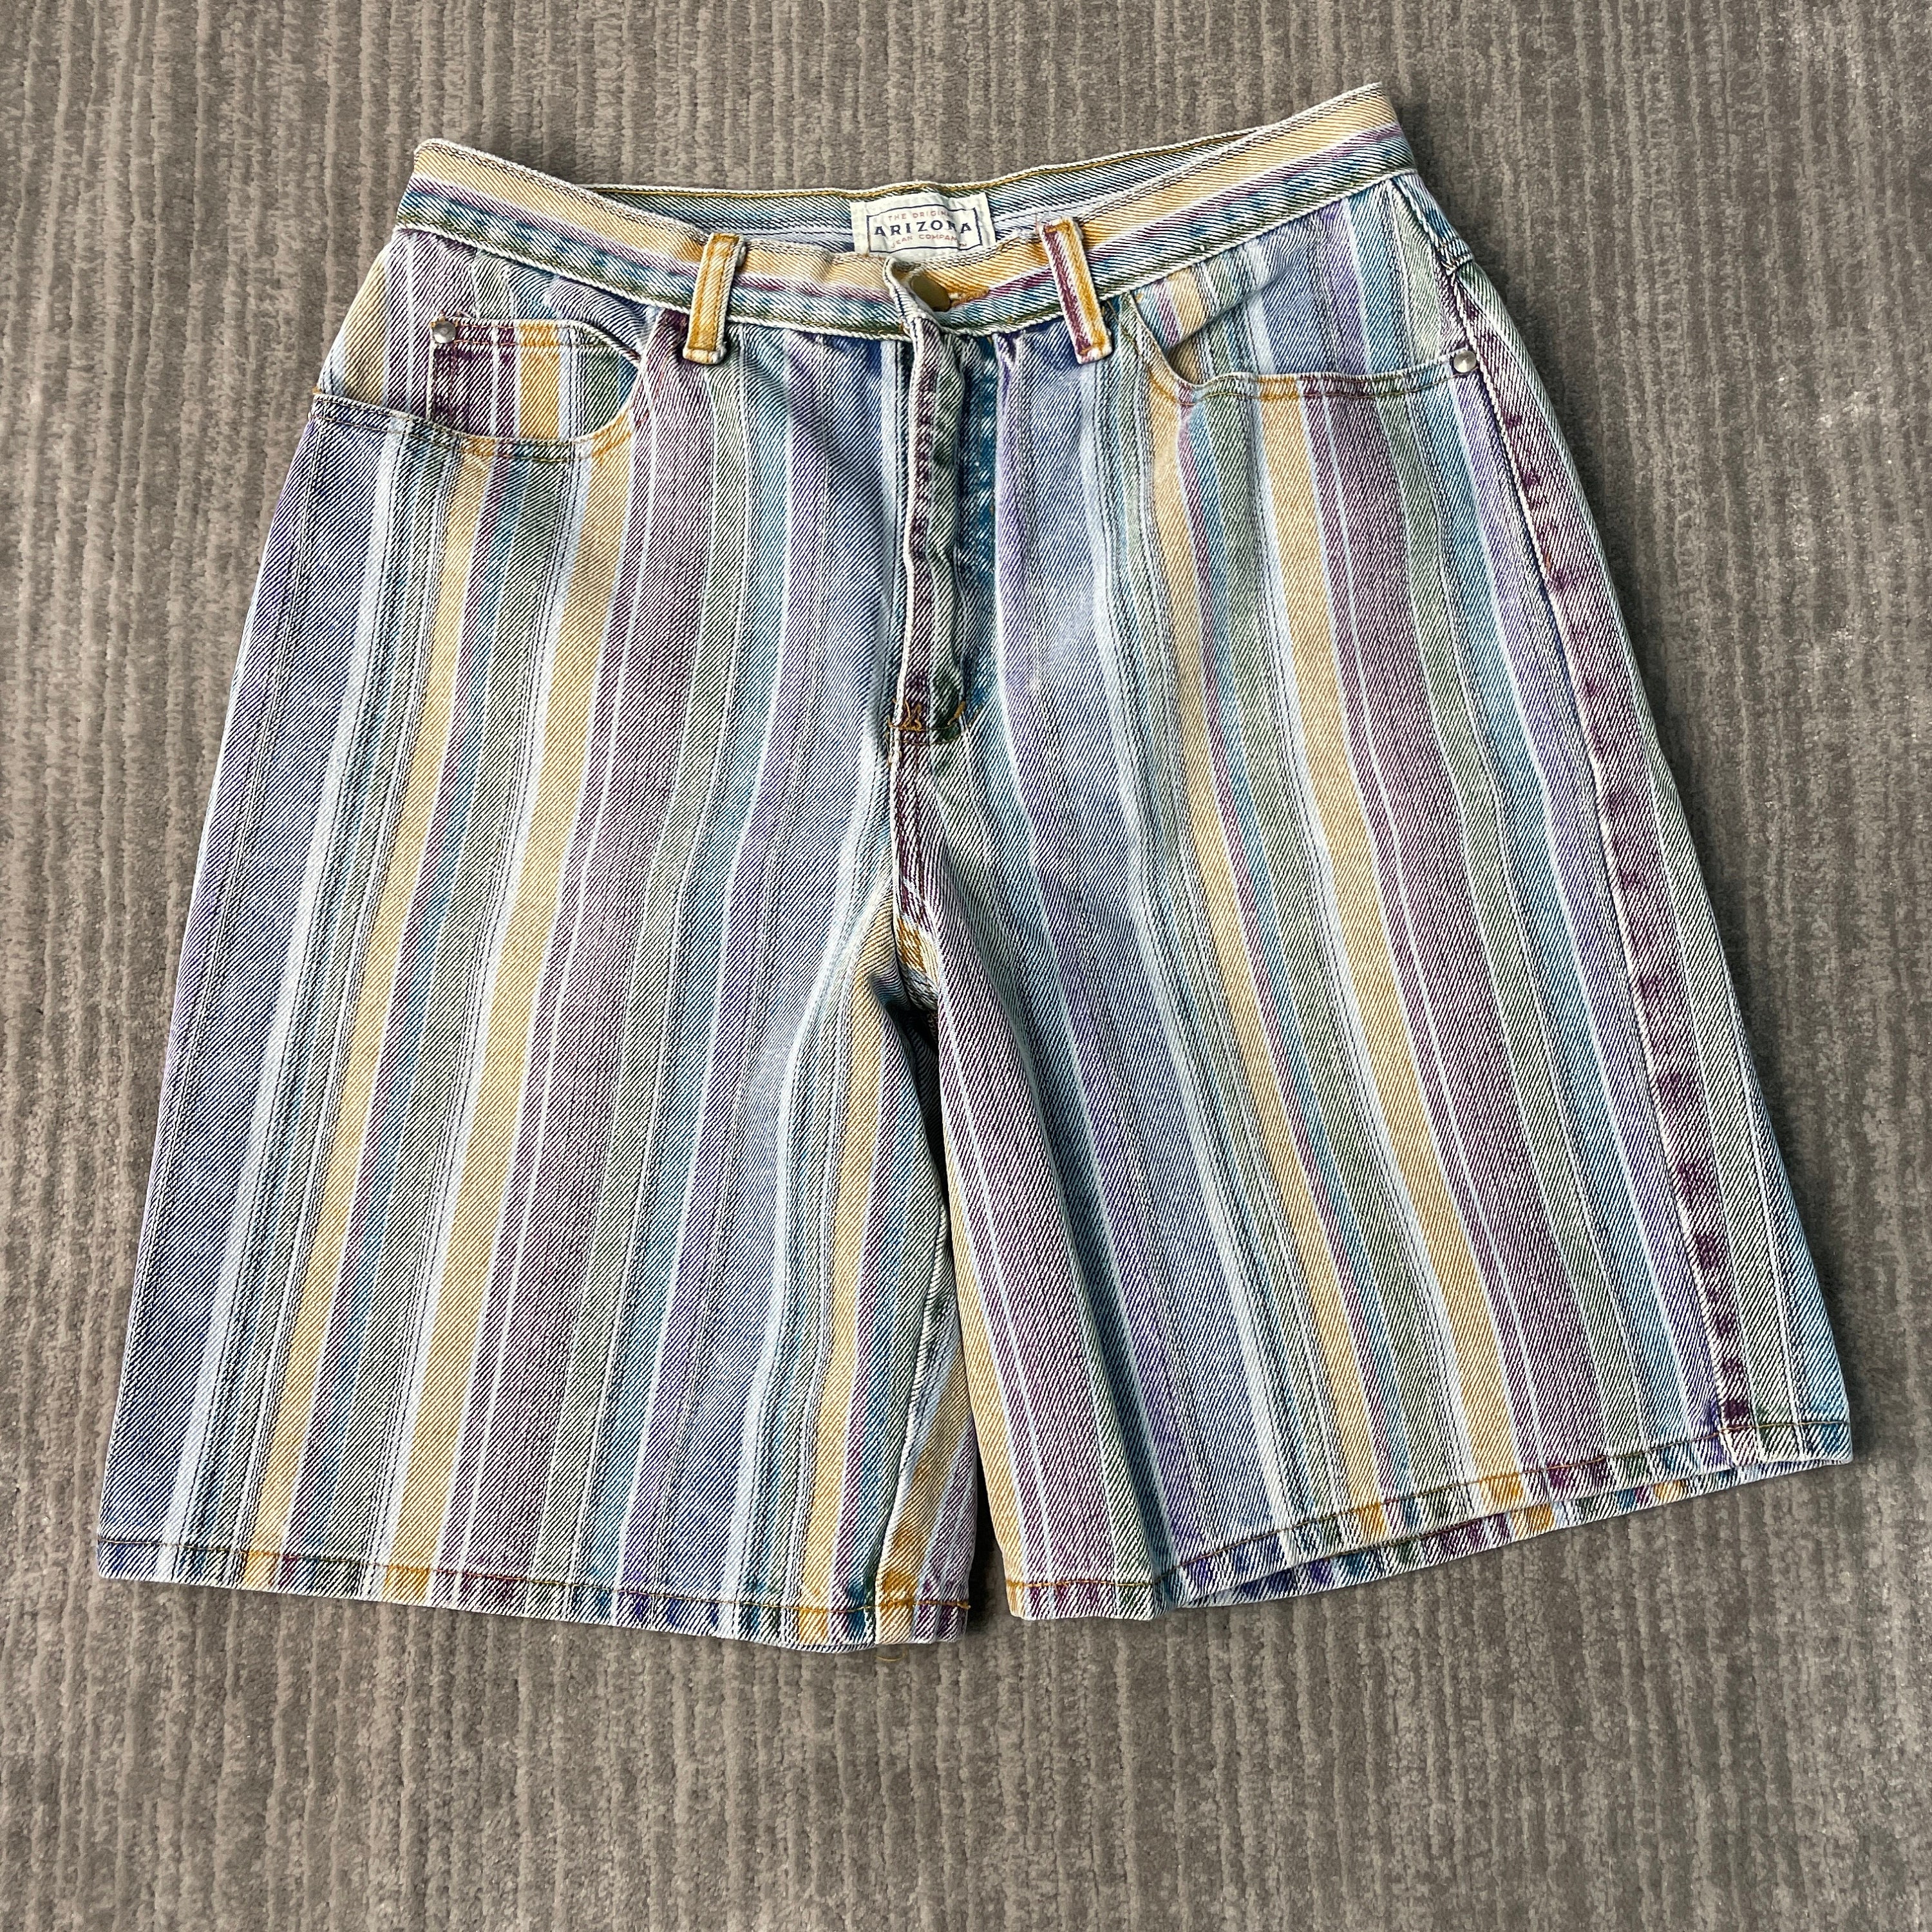 Shorts - Etsy Jeans Arizona